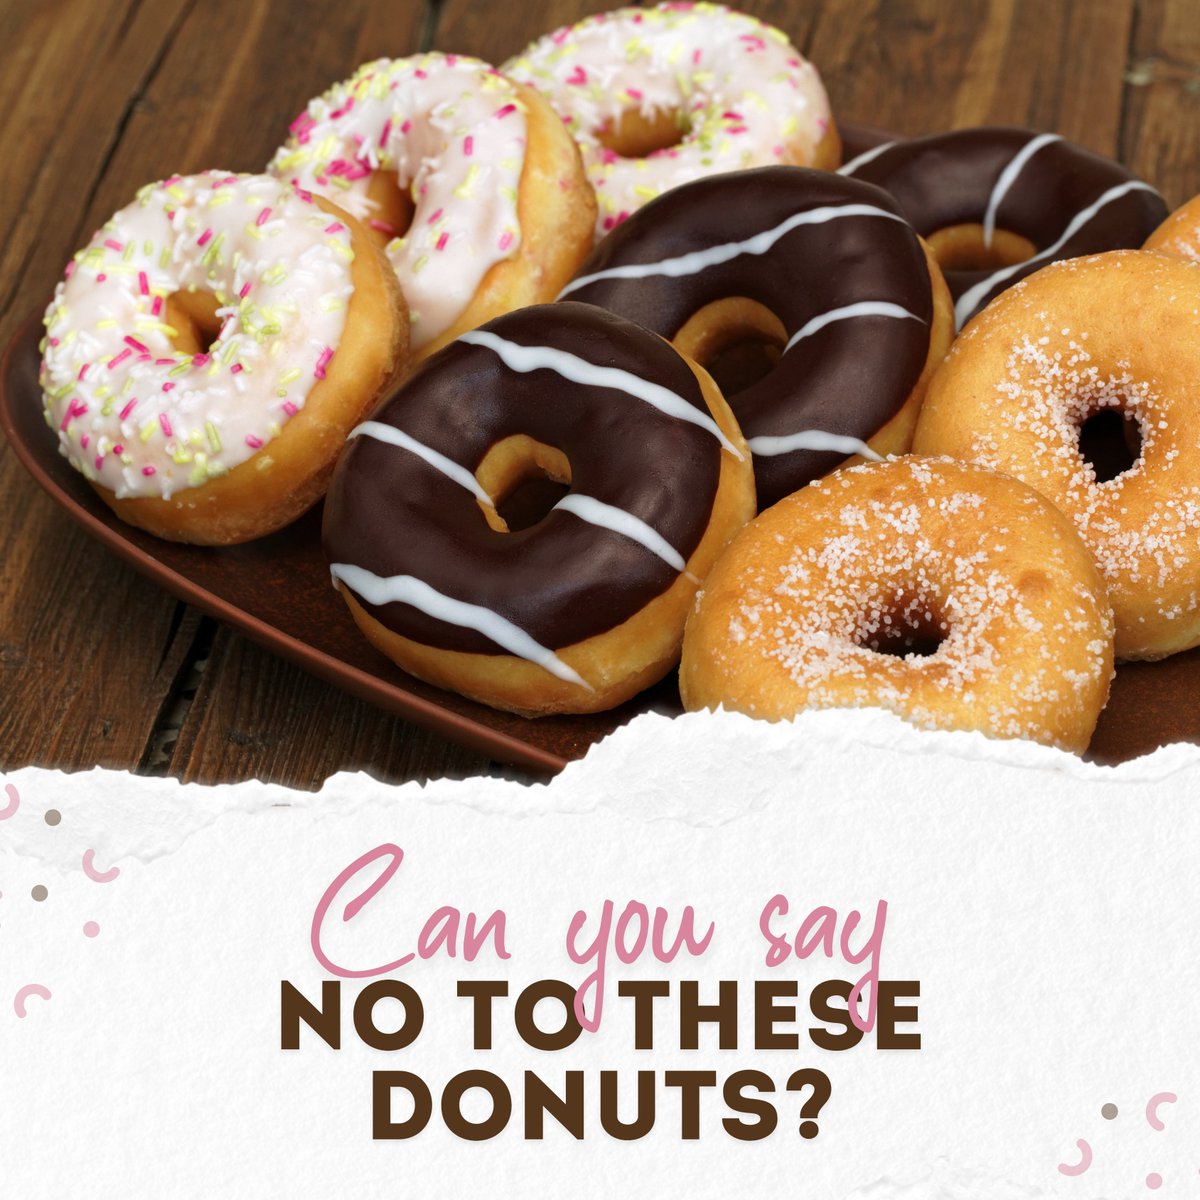 Now my life is sweet like cinnamon... donuts 😏
.
#SweetDazeDonutBoba #donuts #donut #doughnuts #bestdonuts #donutshop #donutshopsf